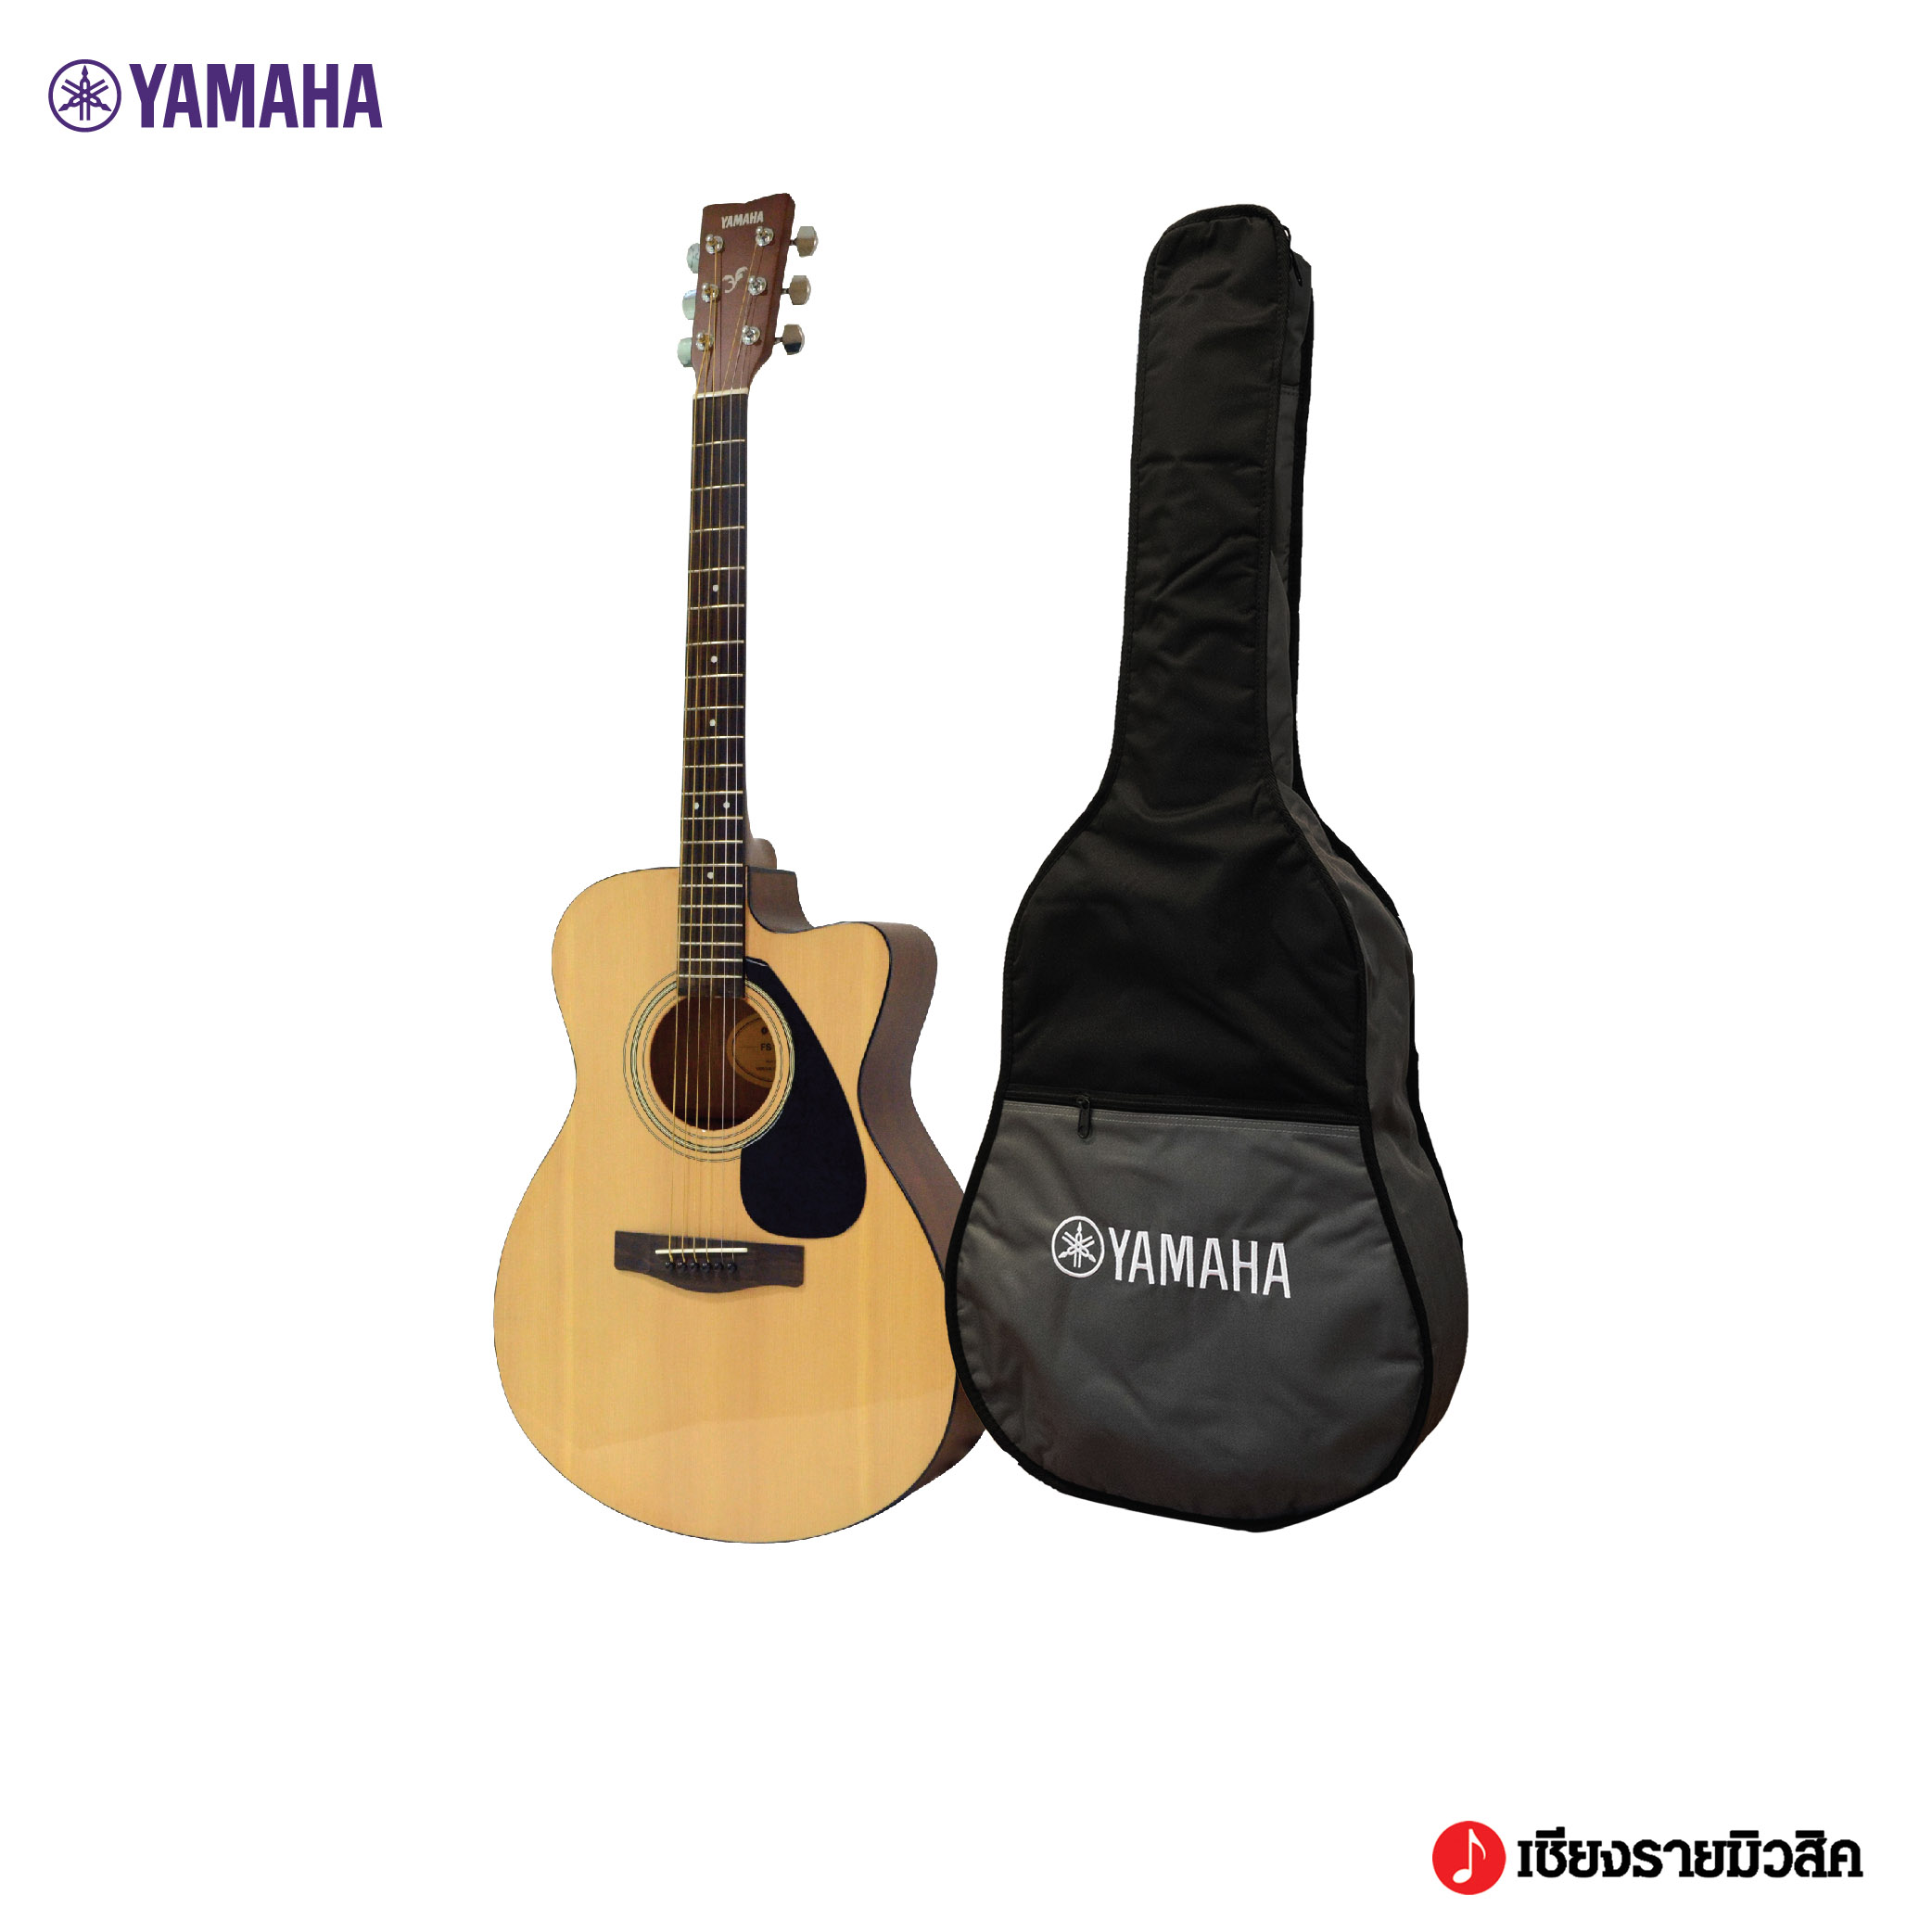 YAMAHA FS100C Acoustic Guitar กีตาร์โปร่งยามาฮ่า รุ่น FS100C + Standard Guitar Bag ขนาด 41 นิ้ว สีไม้